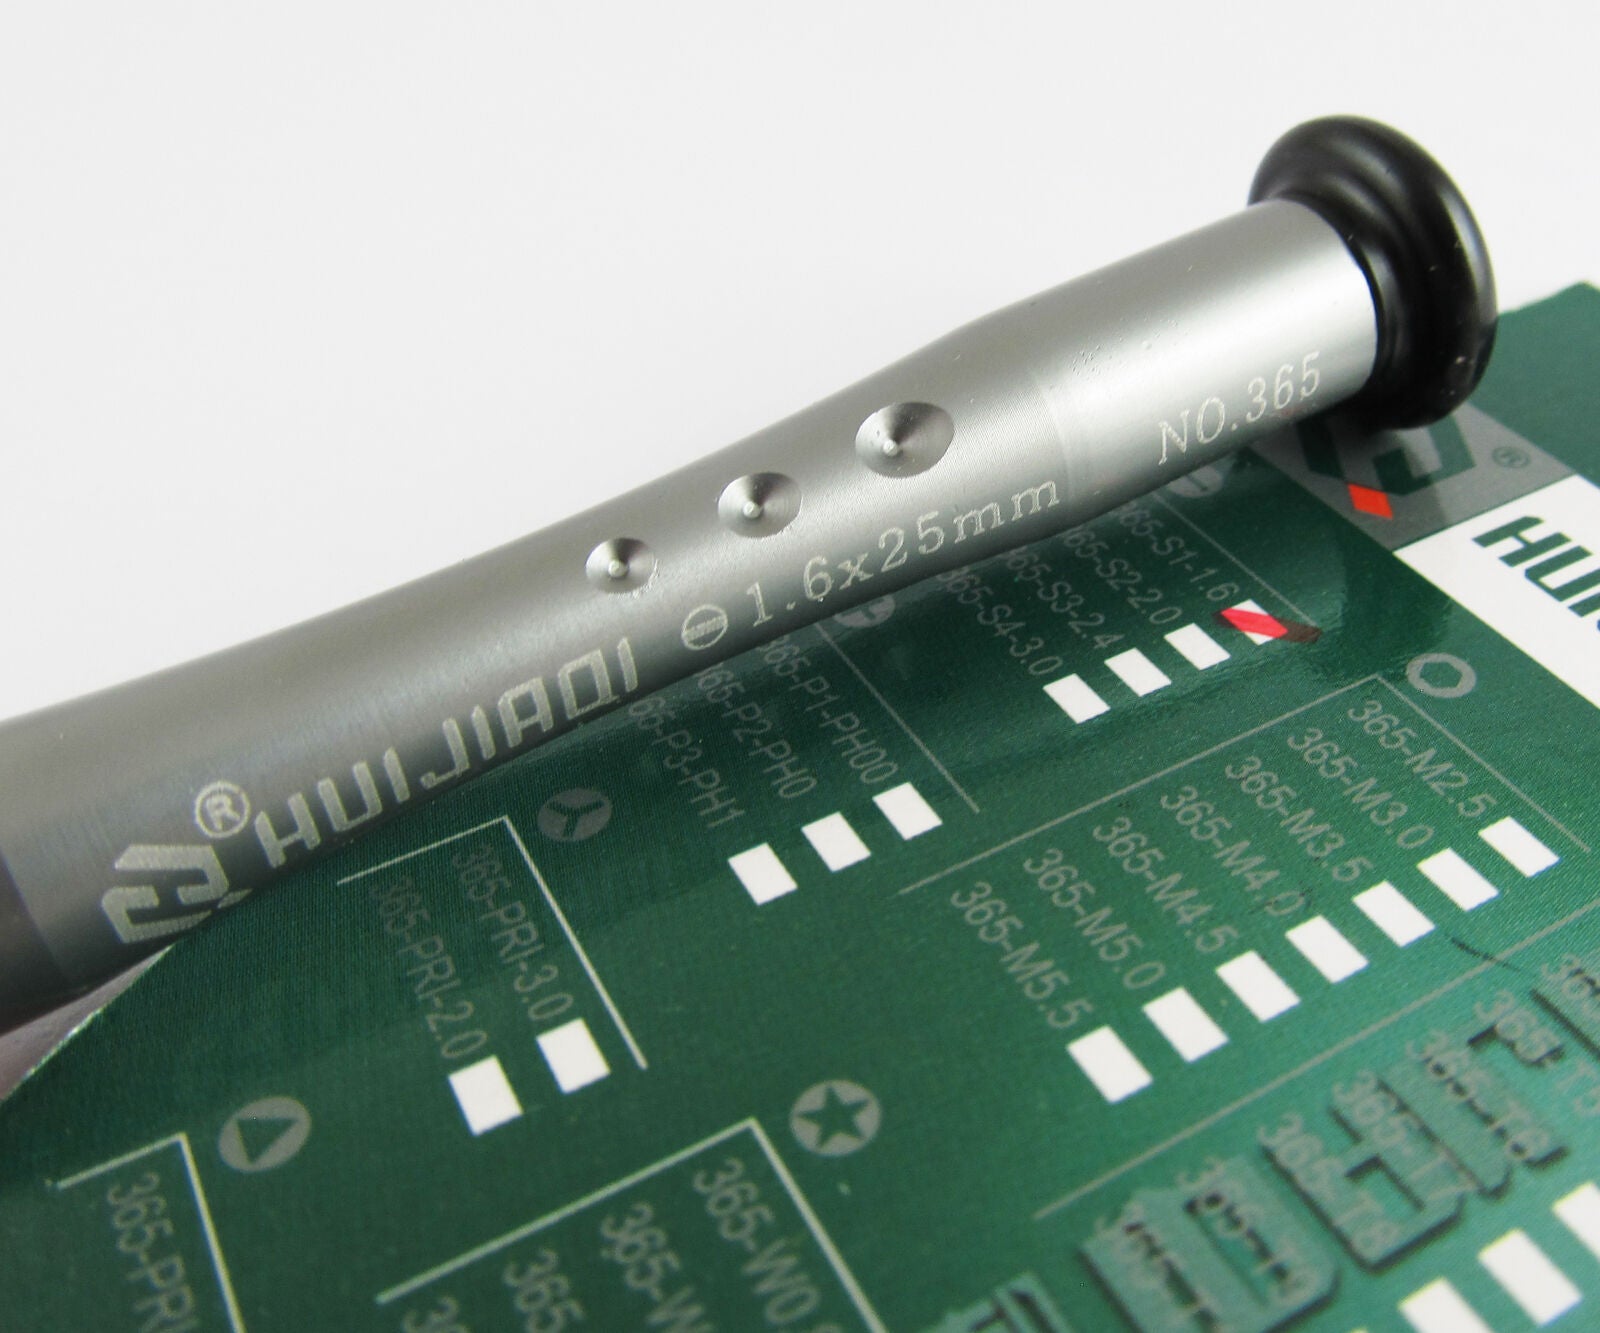 10pcs 1.6x25mm HUIJIAQI Zinc Alloy CR-V Screwdriver slotted screwdriver Tools